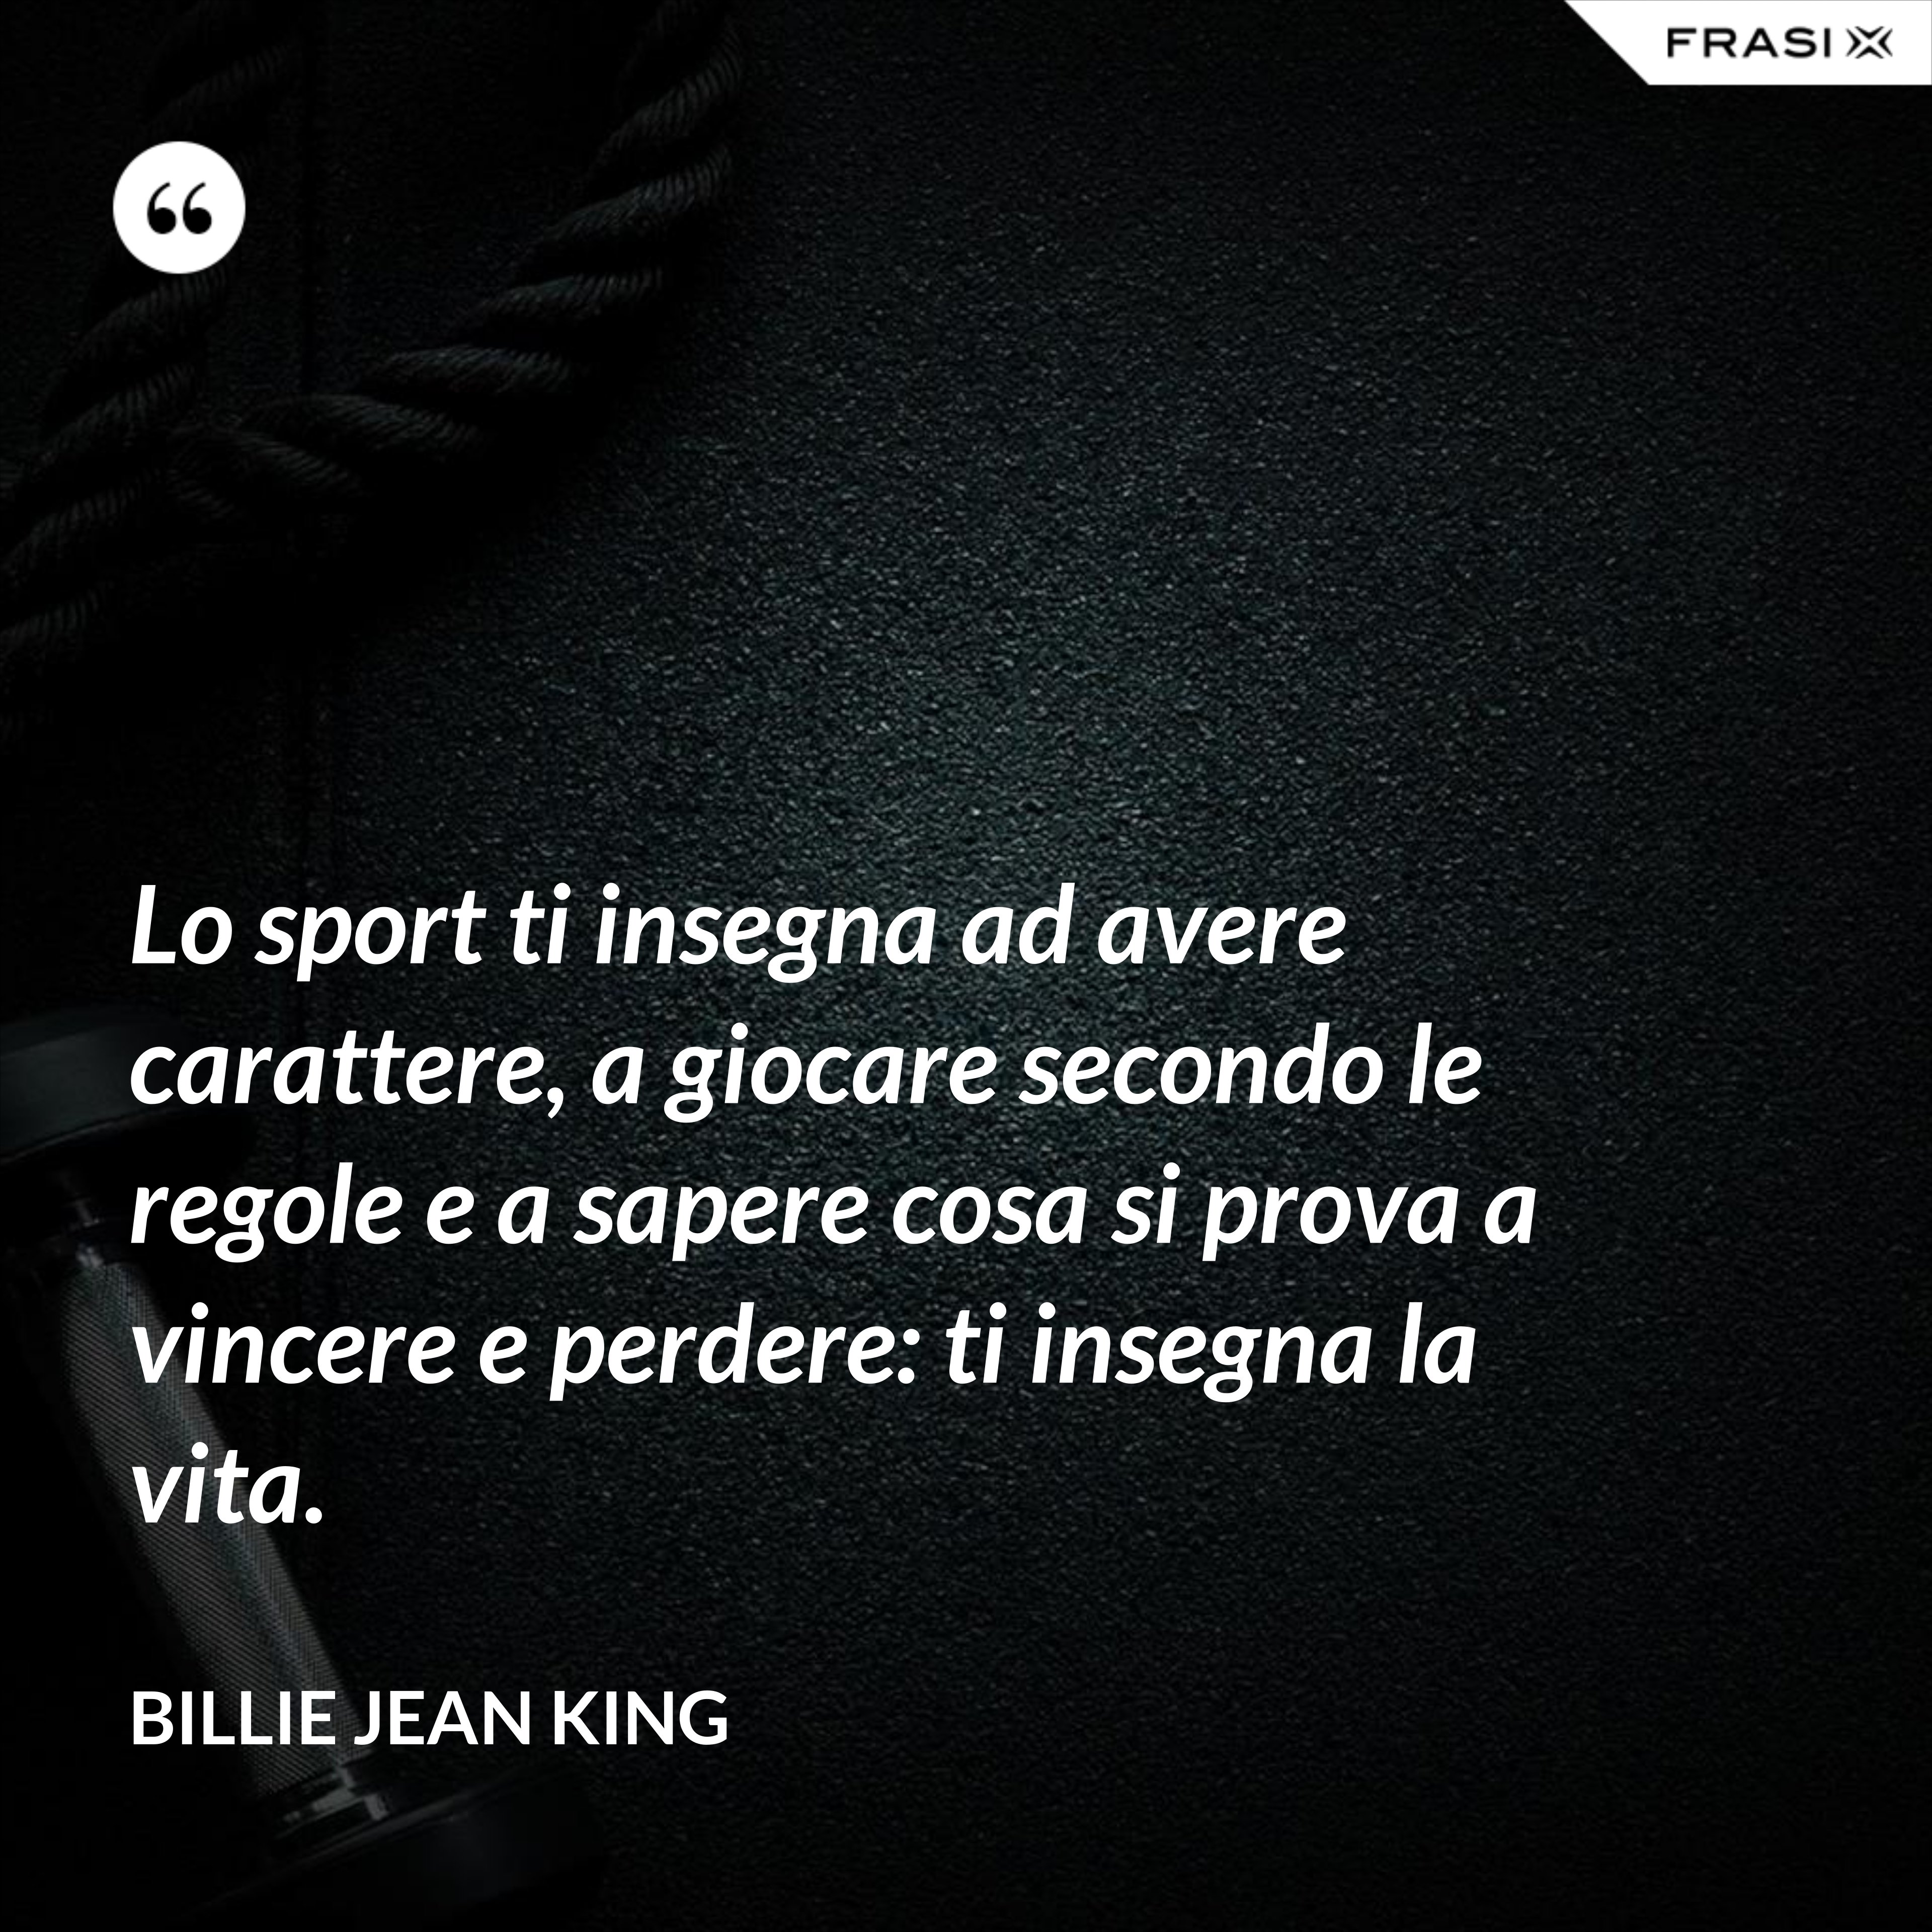 Lo sport ti insegna ad avere carattere, a giocare secondo le regole e a sapere cosa si prova a vincere e perdere: ti insegna la vita. - Billie Jean King